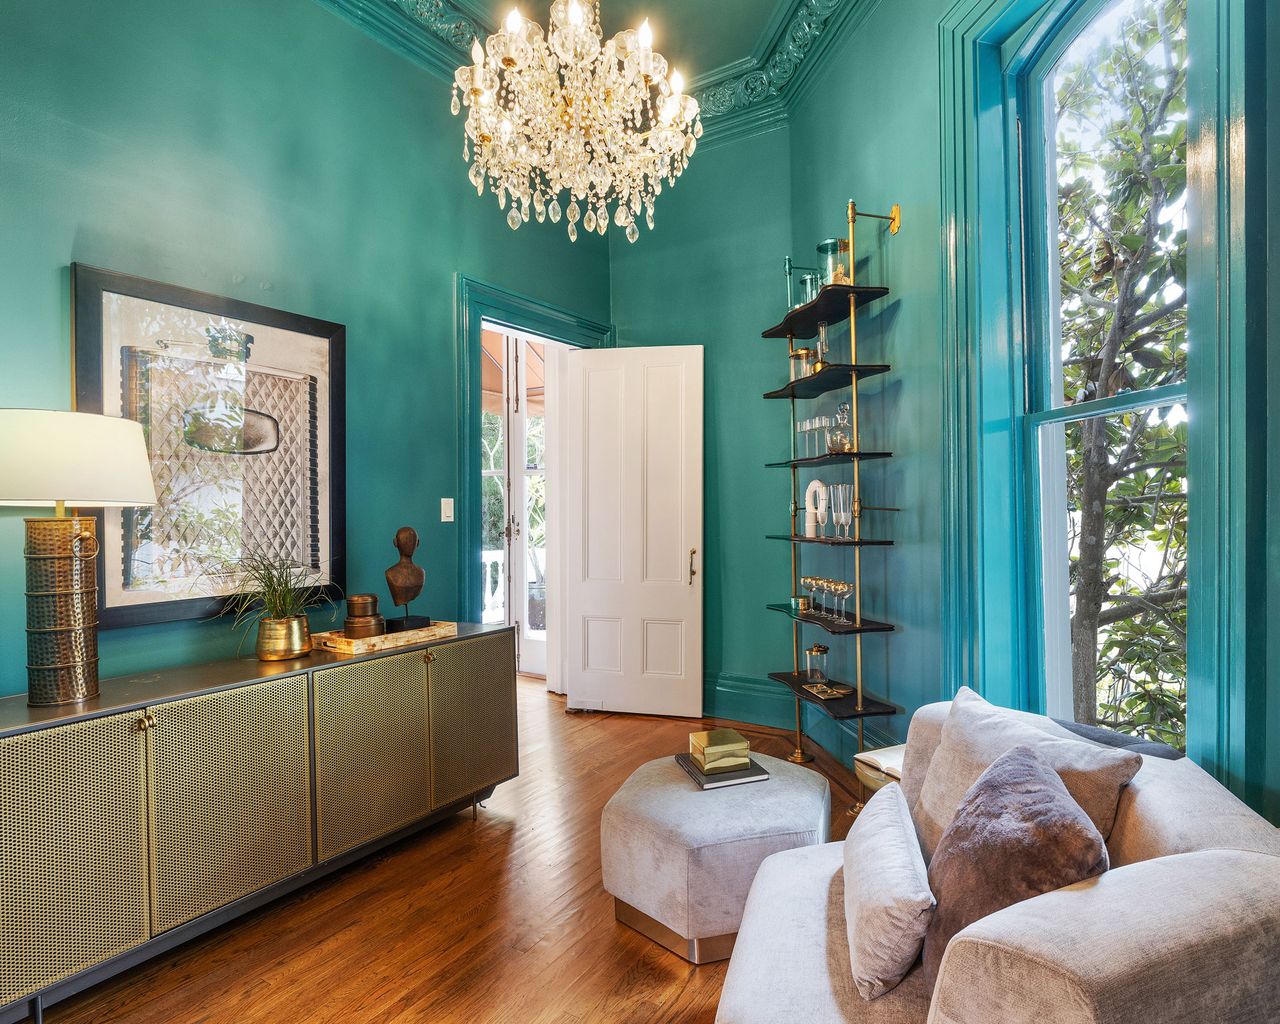 Explore the rare Feusier Octagon House in San Francisco | Homes & Gardens